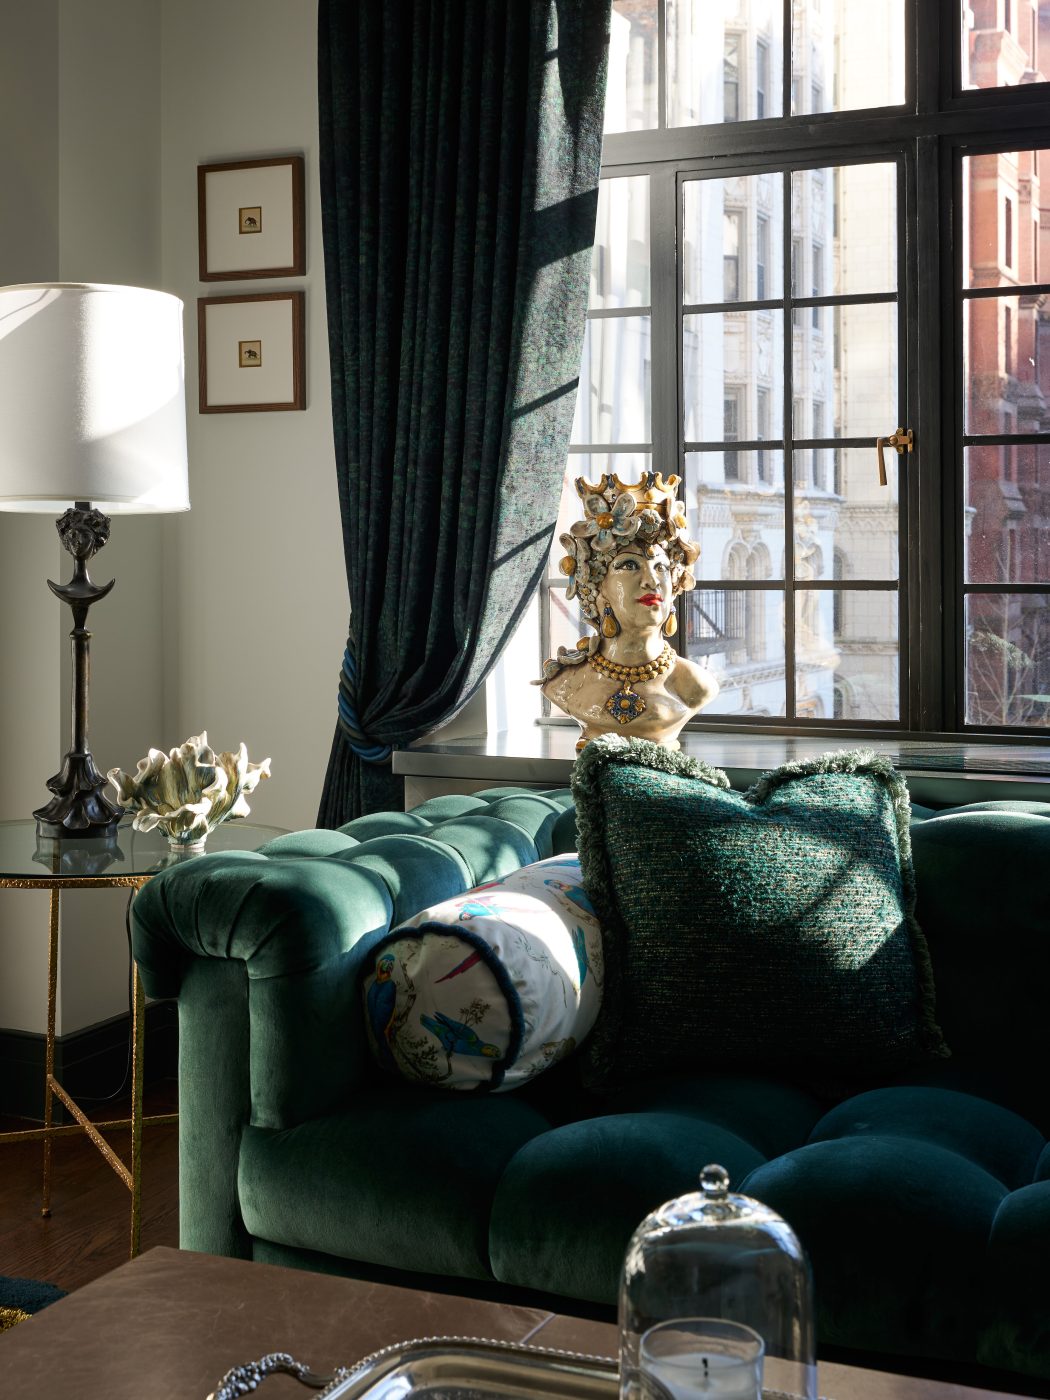 detail of A. Rudin velvet sofa, lamp and decorative ceramic object in living room Bennett Leifer's New York apartment